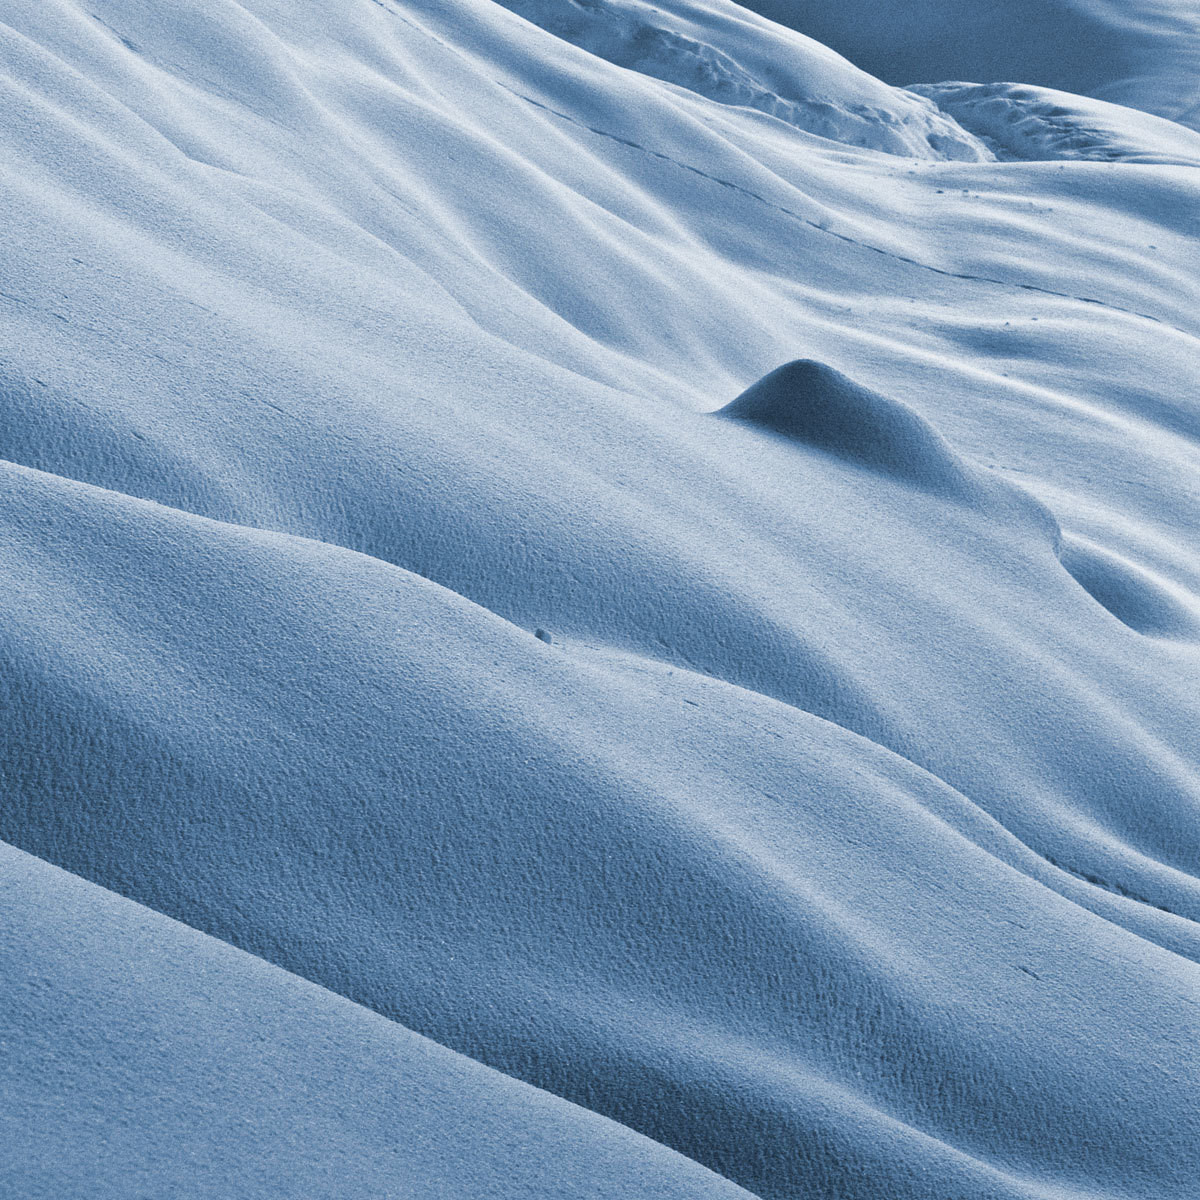 Dunes of snow